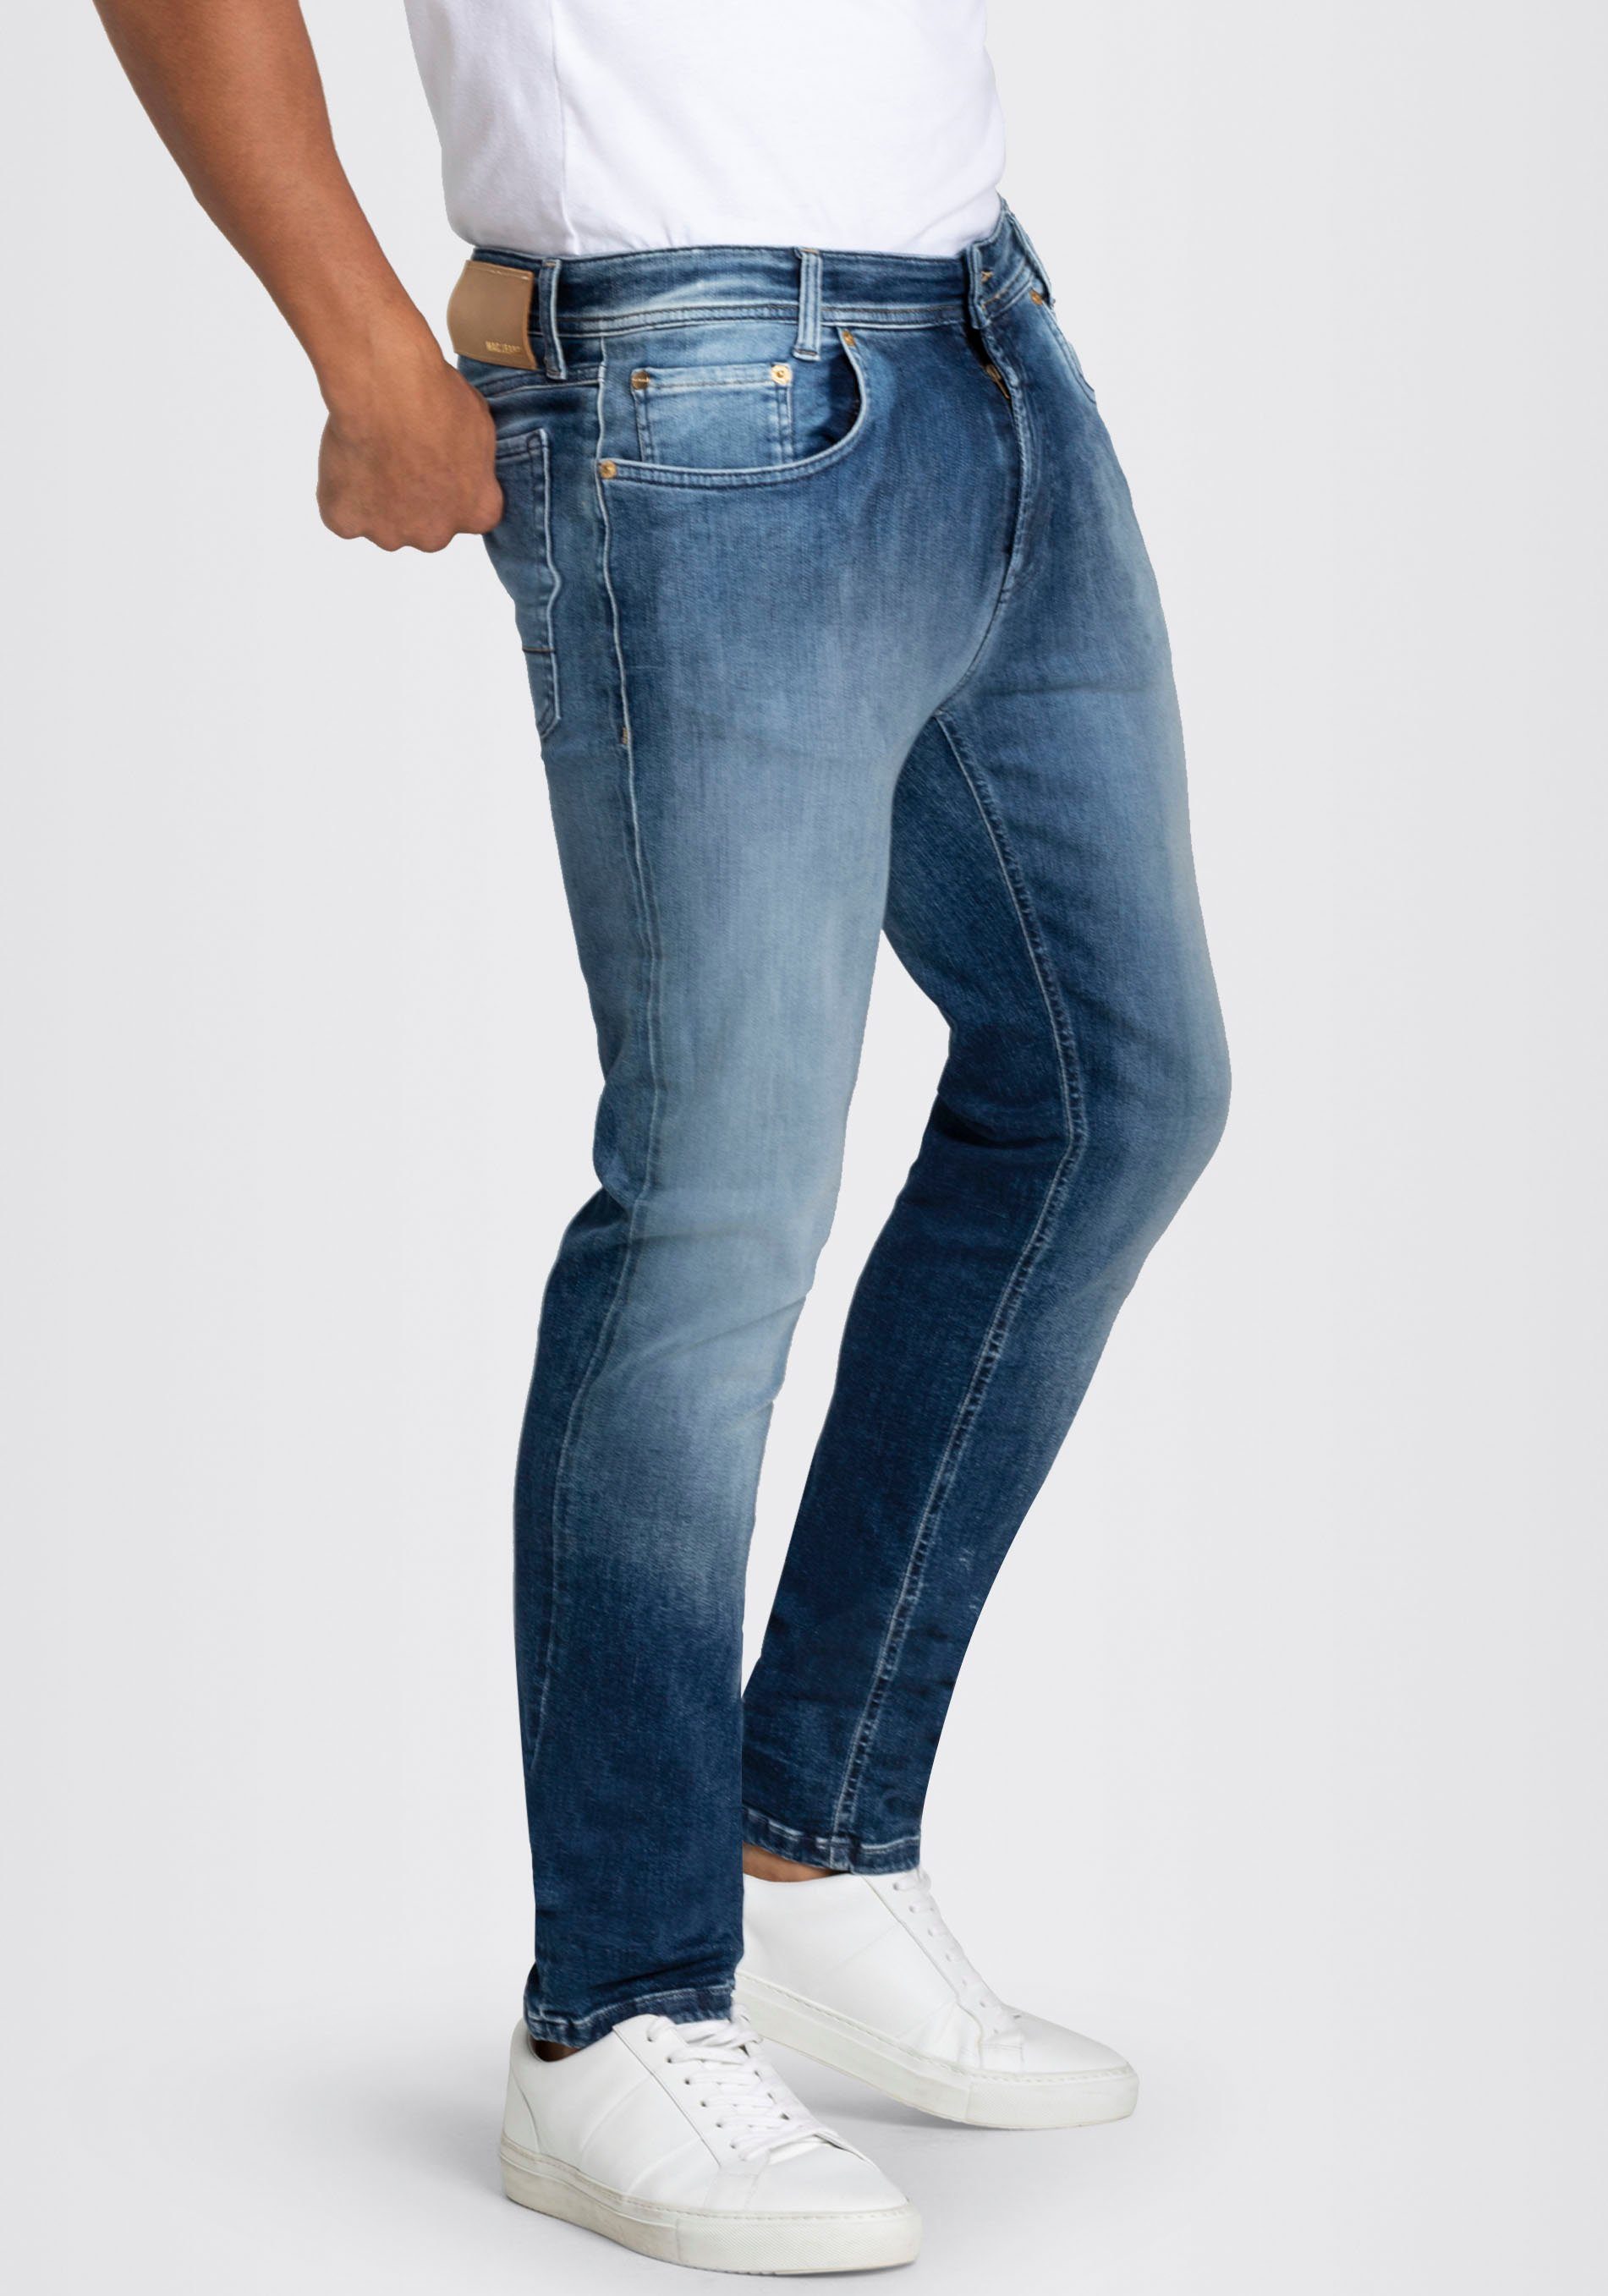 MAC Straight-Jeans Flexx-Driver super blue 3D elastisch authentic wash